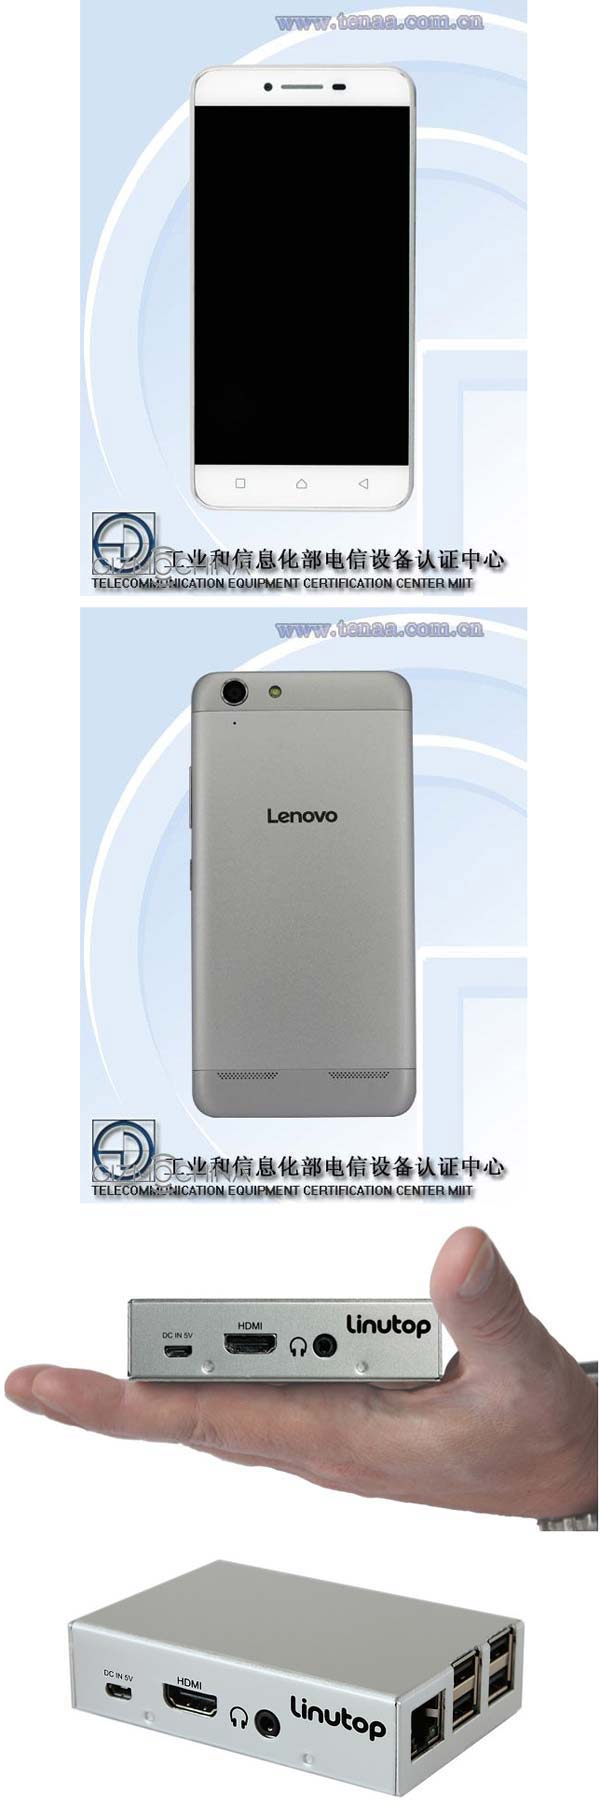 На фото Lenovo P1 Mini и Linutop XS